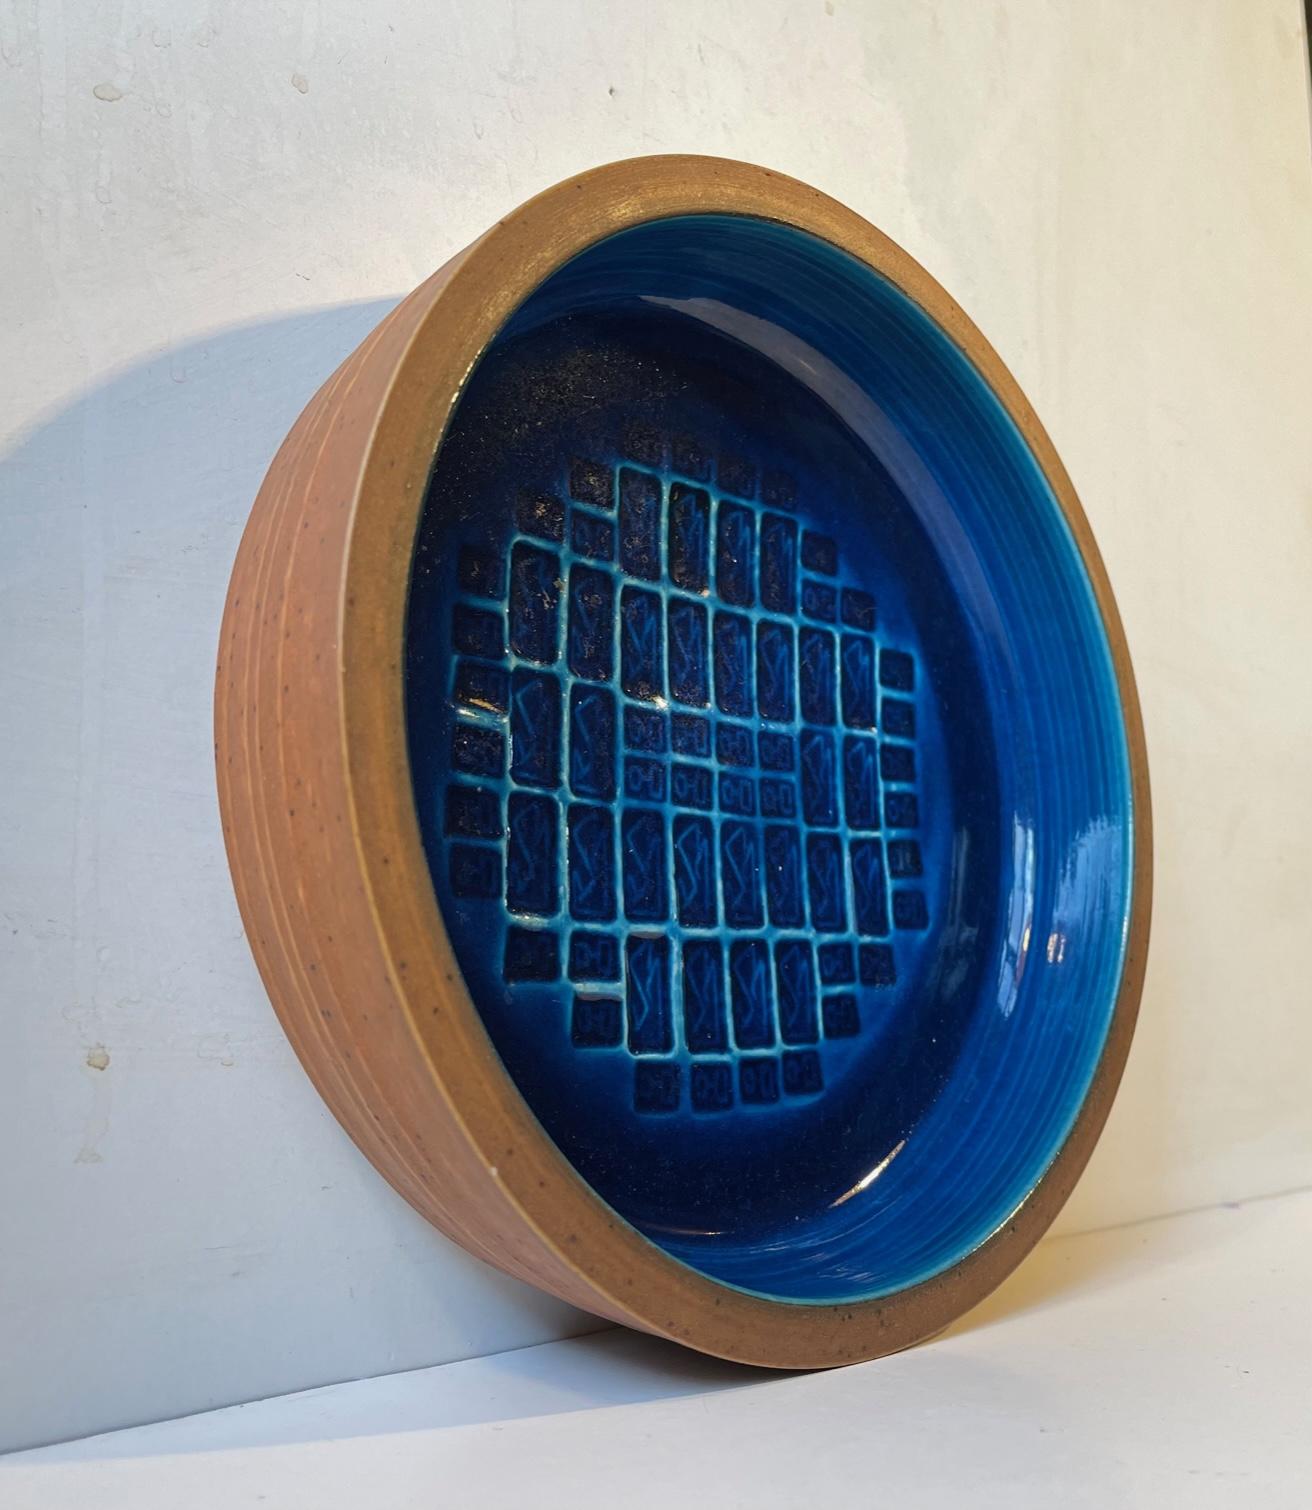 Ein seltener Teller oder eine Schale des dänischen Keramikers Jørgen Mogensen. Außen aus unglasiertem Steinzeug und innen mit abstrakten Mustern, die durch eine leuchtend blaue Glasur hervorgehoben werden. Vom Künstler handsigniert und